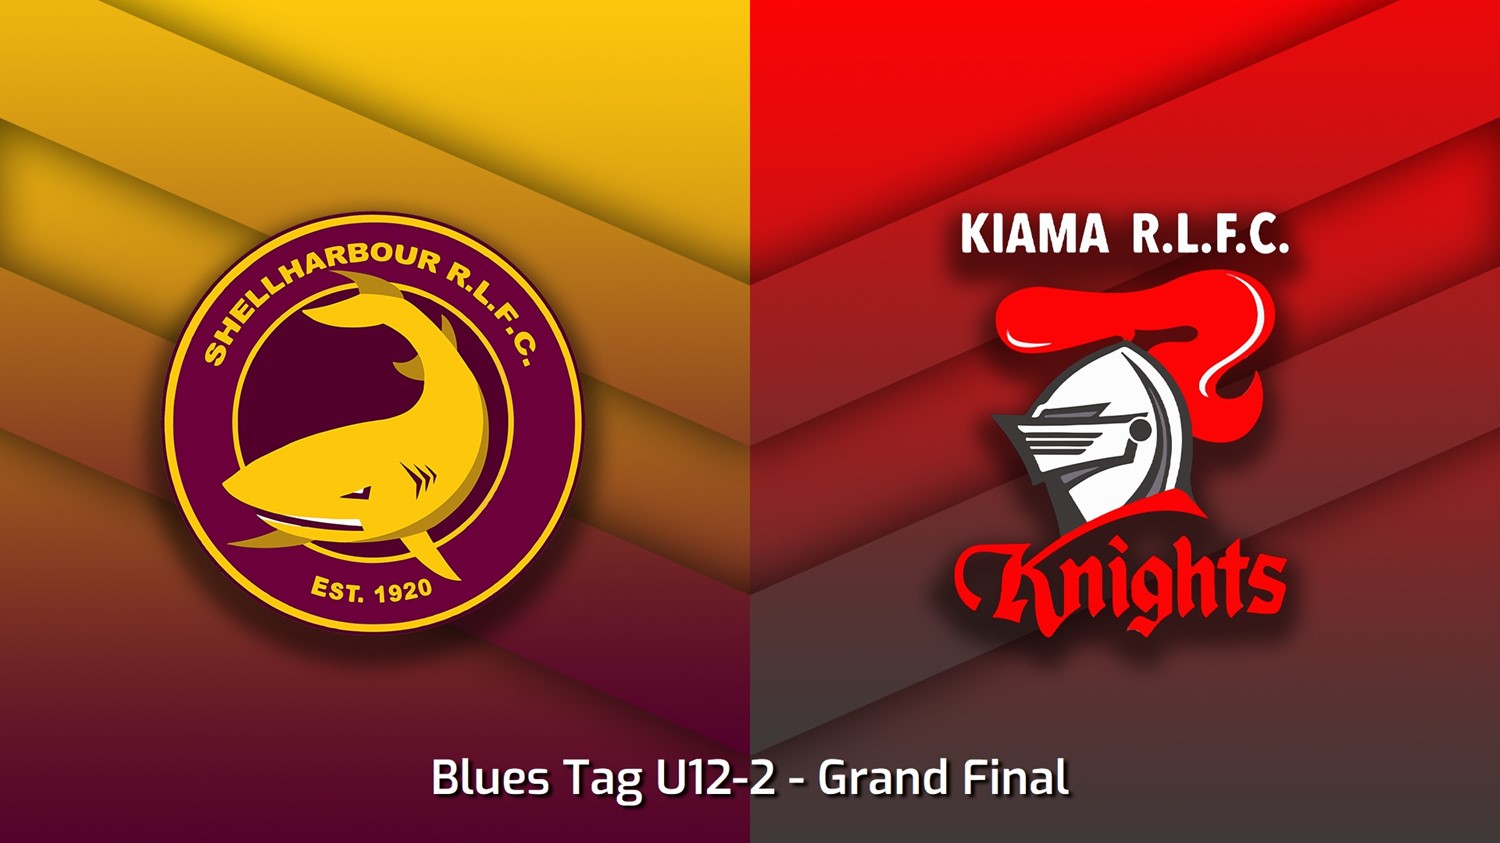 230826-South Coast Juniors Grand Final - Blues Tag U12-2 - Shellharbour Sharks v Kiama Knights Minigame Slate Image